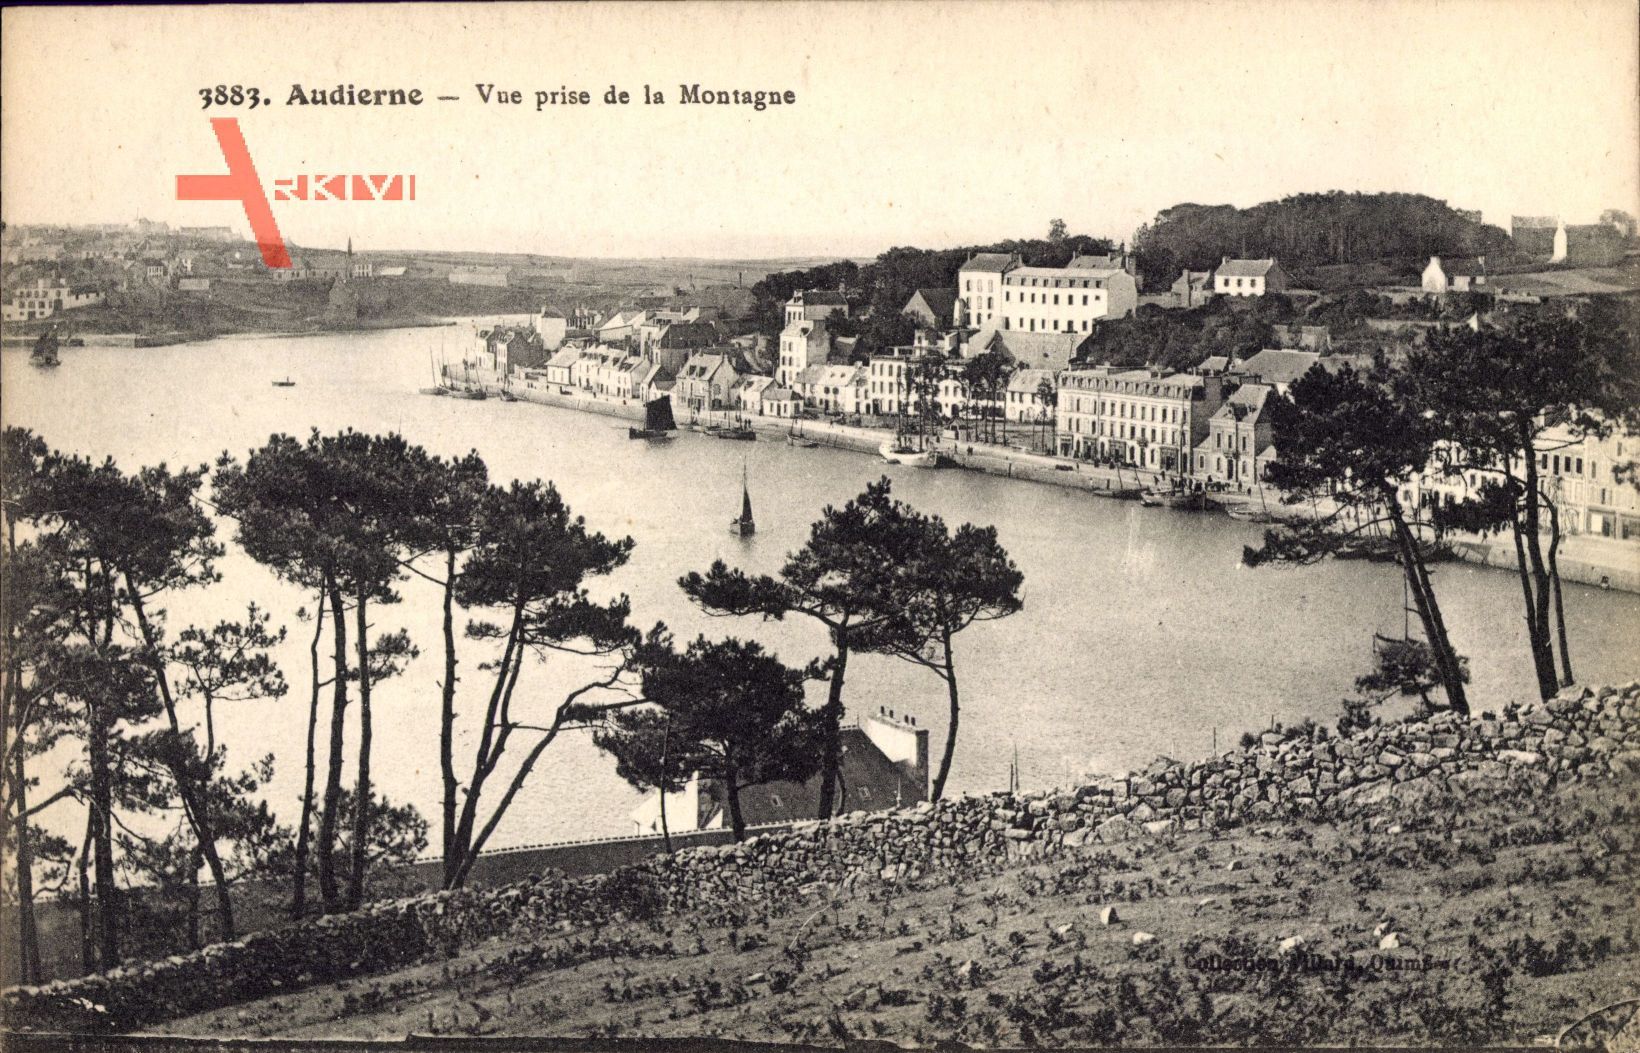 Audierne Finistère, Vue prise de la Montague, Segelboote, Häuser